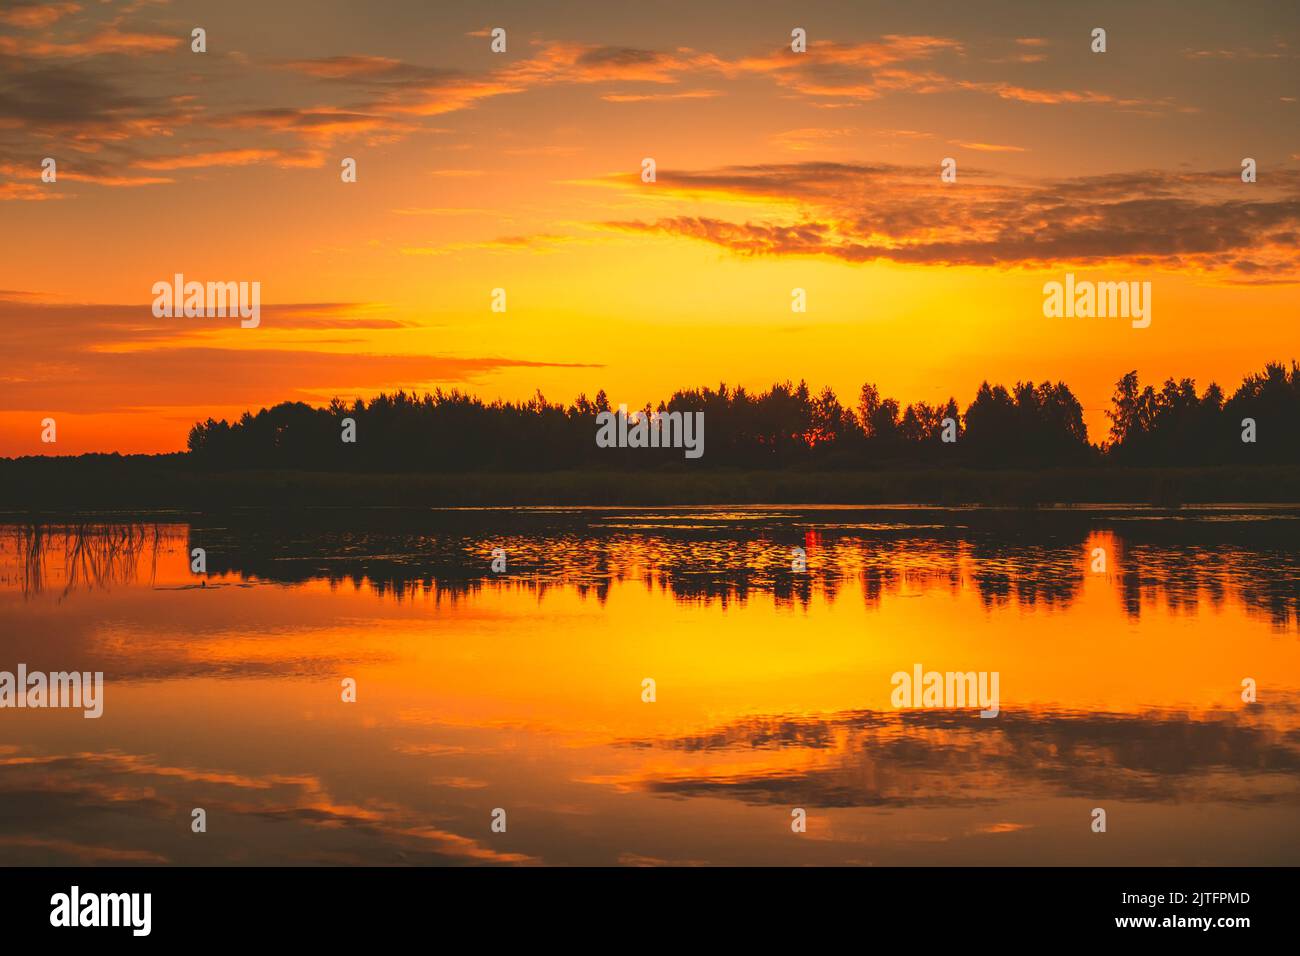 Leuchtend orange Sonnenuntergang über dem See, goldene Wolken und Schattenwald spiegeln sich im Wasser. Erstaunliche Natur Hintergrund Textur Stockfoto